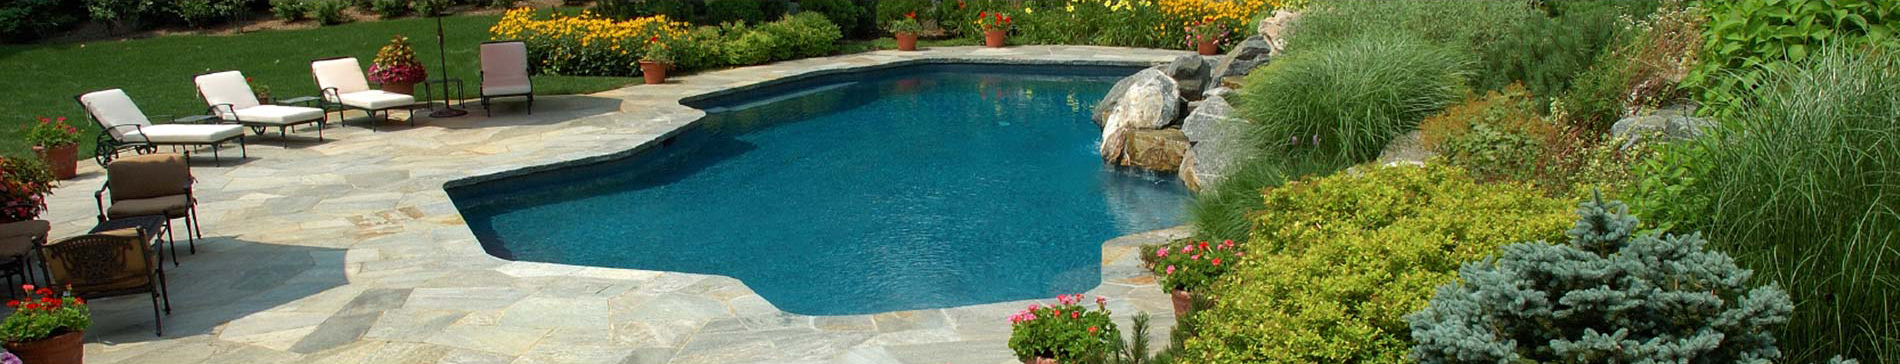 Swimming-Pool in Garten